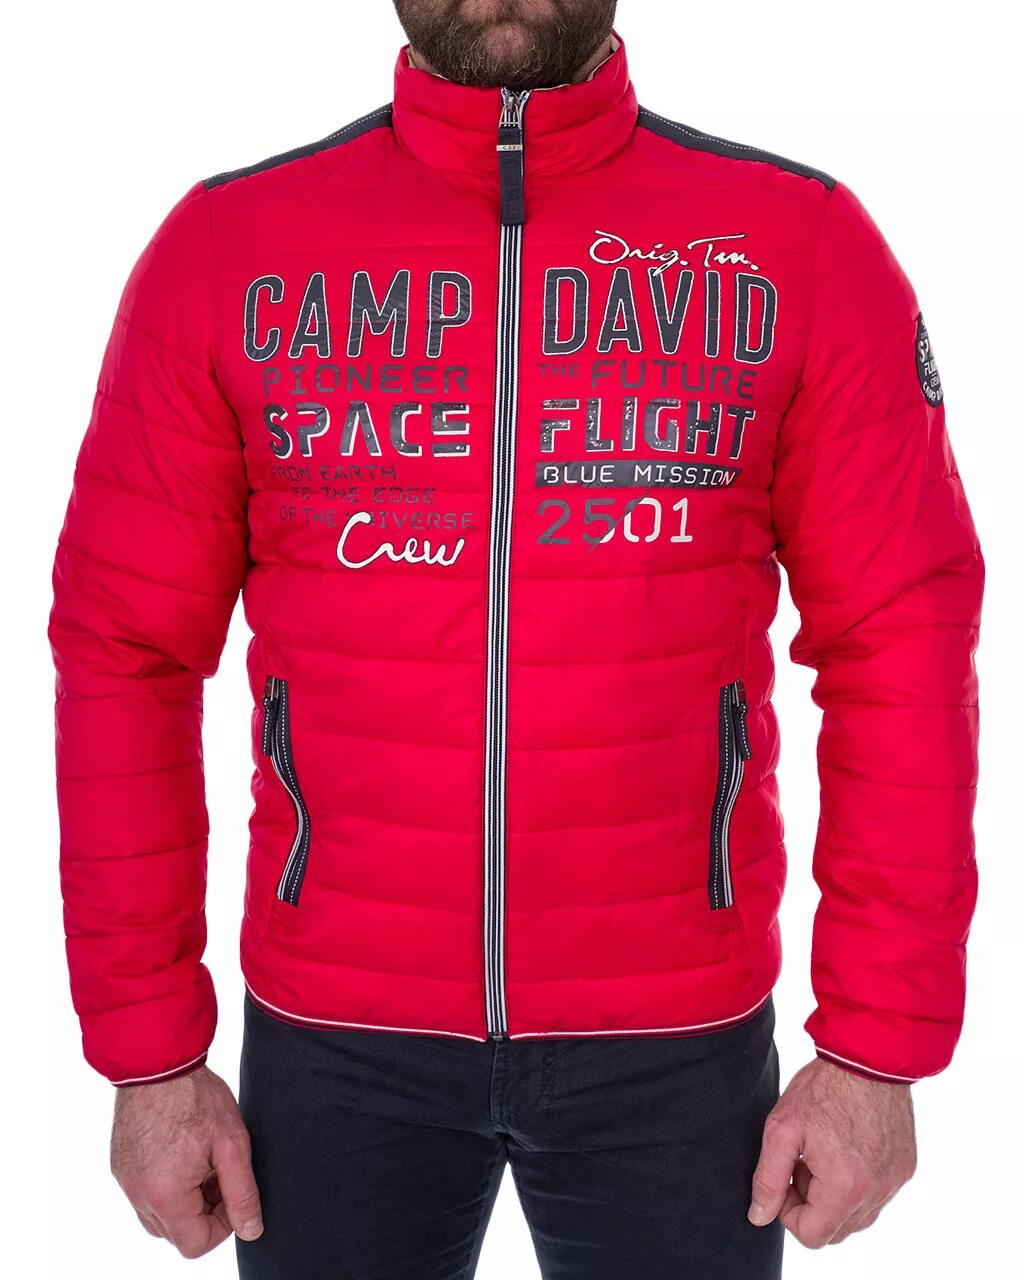 Camp David куртка зимняя красная. Мужские куртки Кэмп Дэвид. Куртка Кэмп Дэвид красная. Camp David куртка мужская XXL.